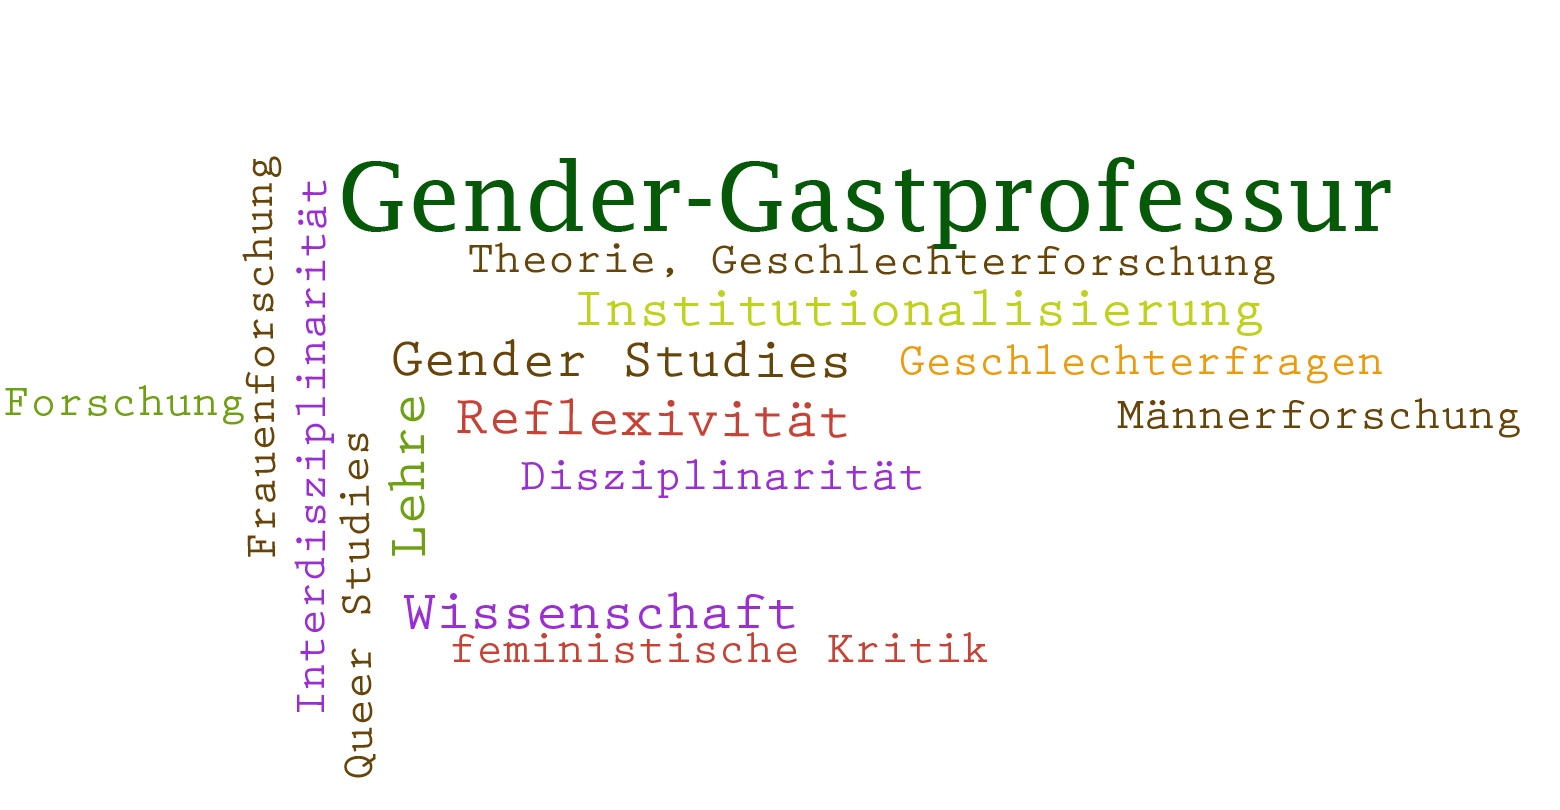 Wortwolke zur Gender-Gastprofessur